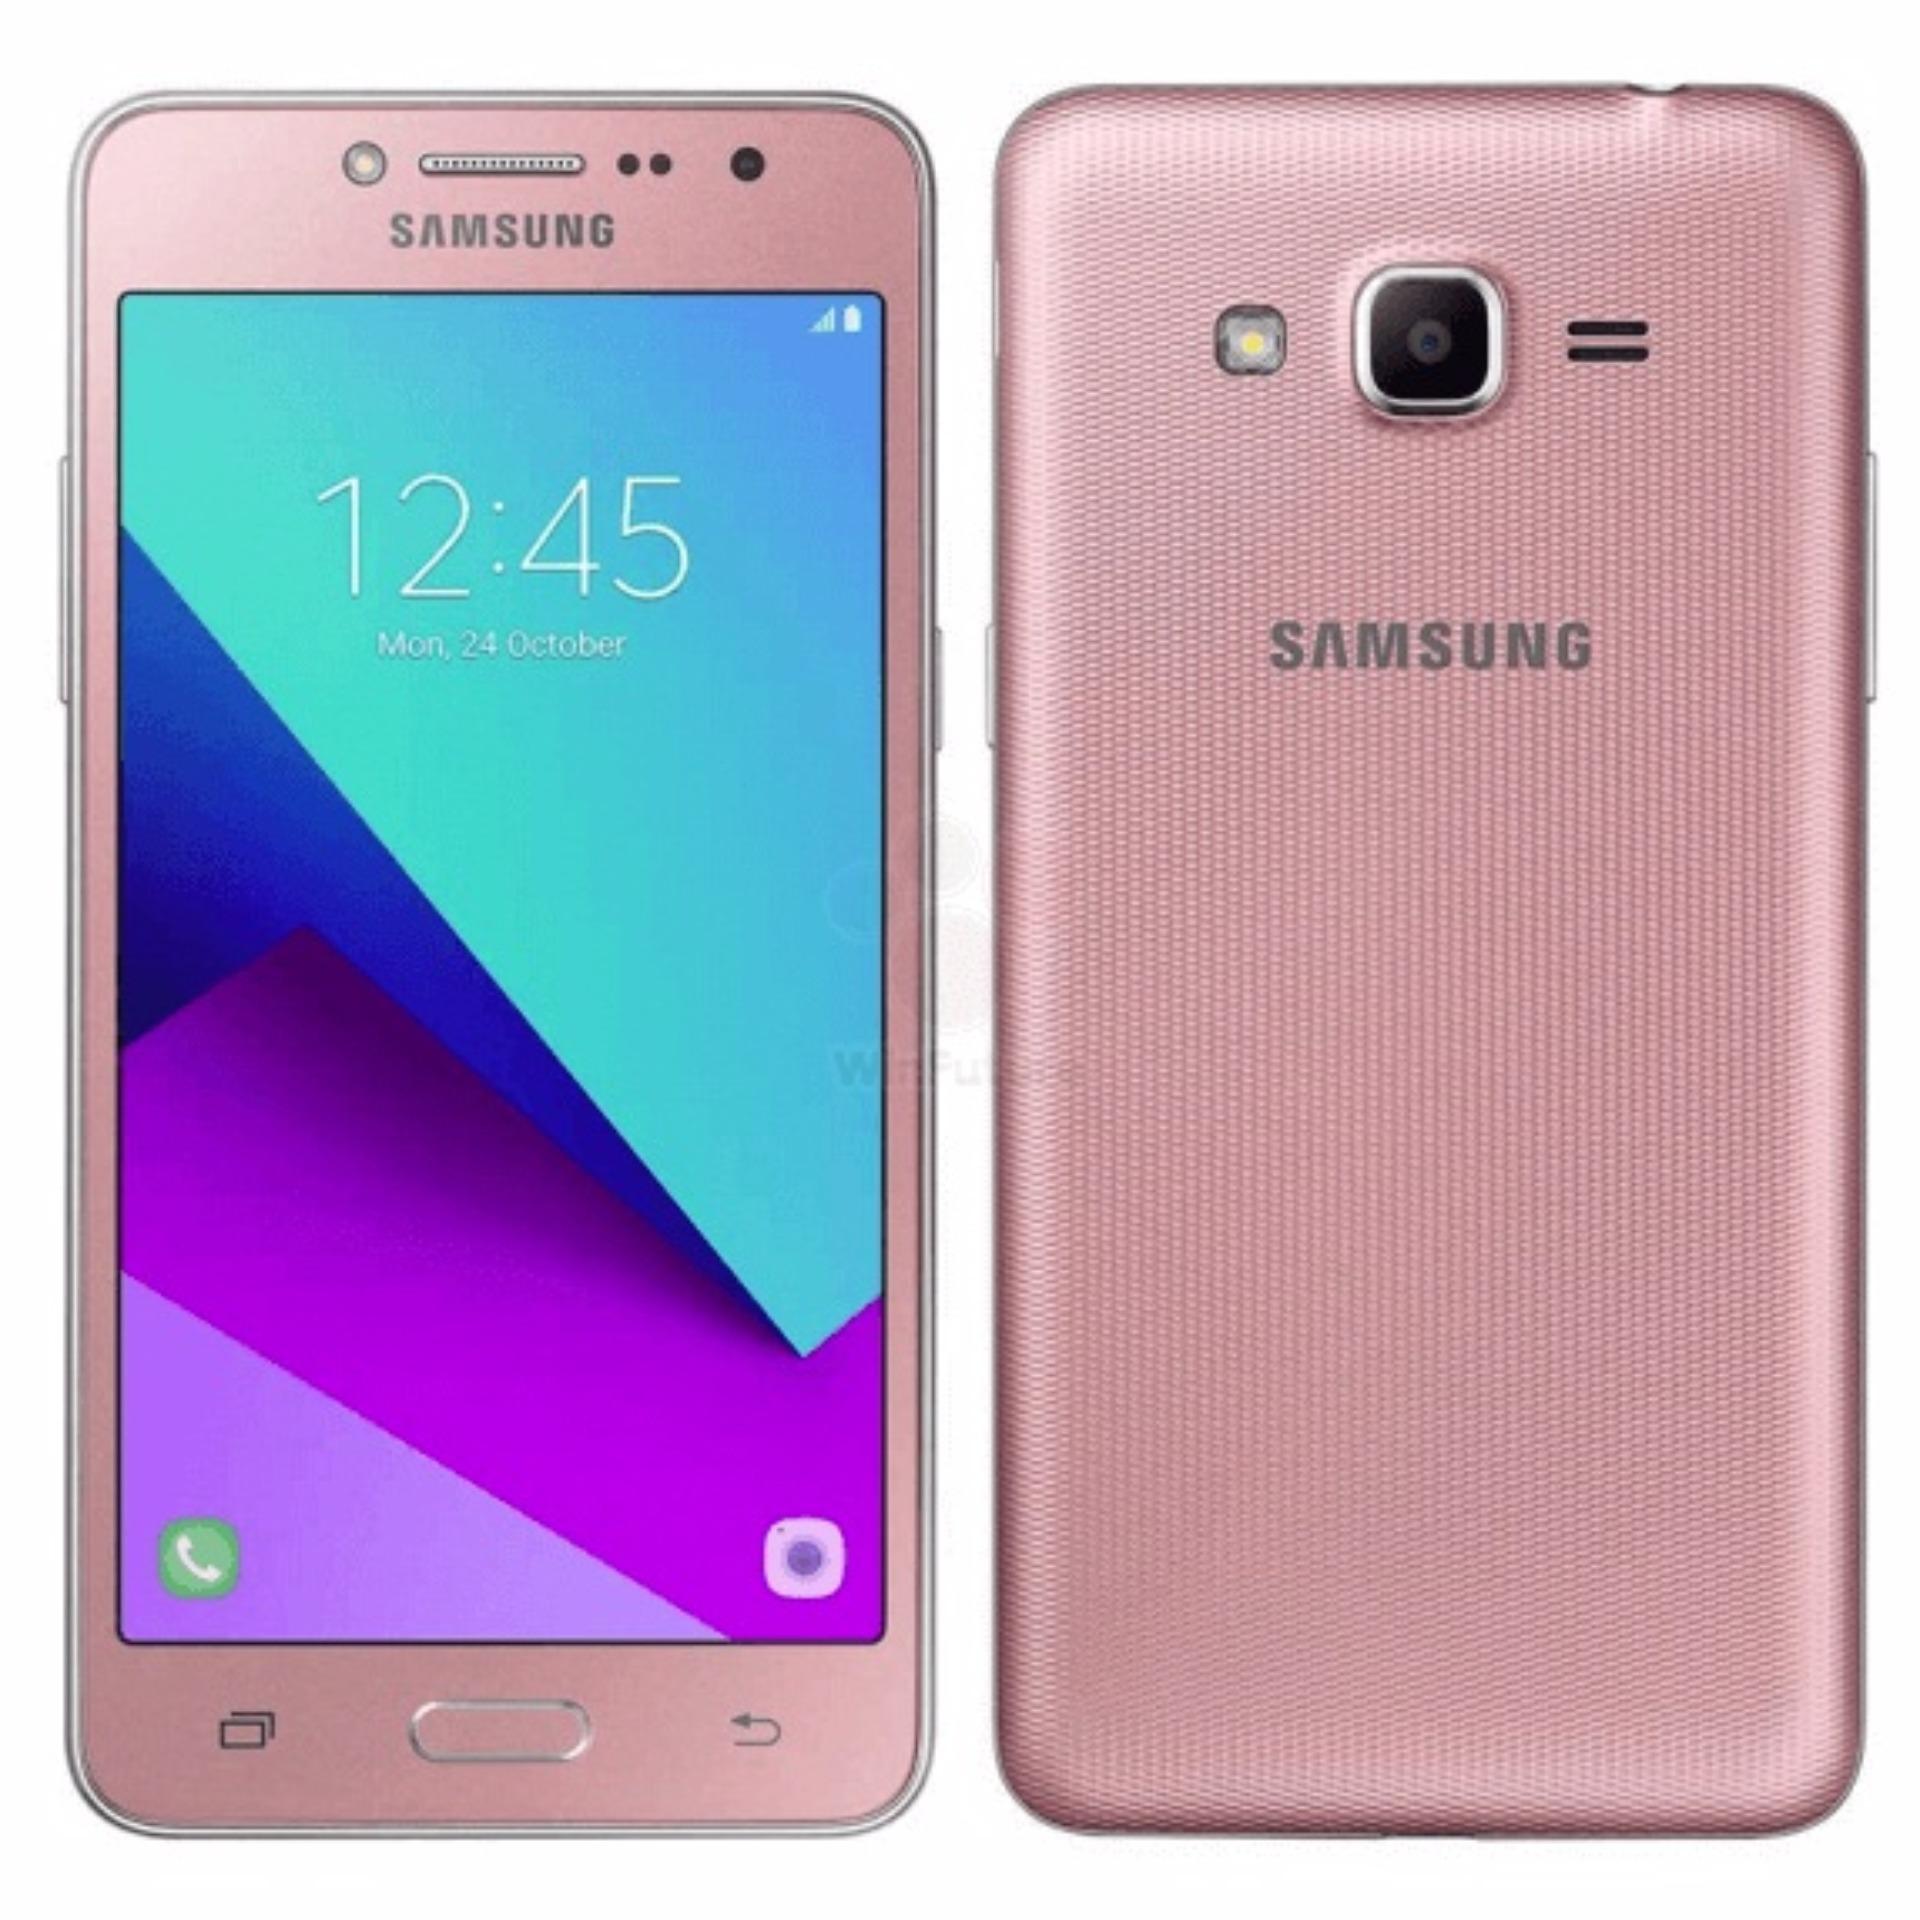 Samsung Galaxy J2 Prime 8GB (Hồng) - Hãng Phân phối chính thức